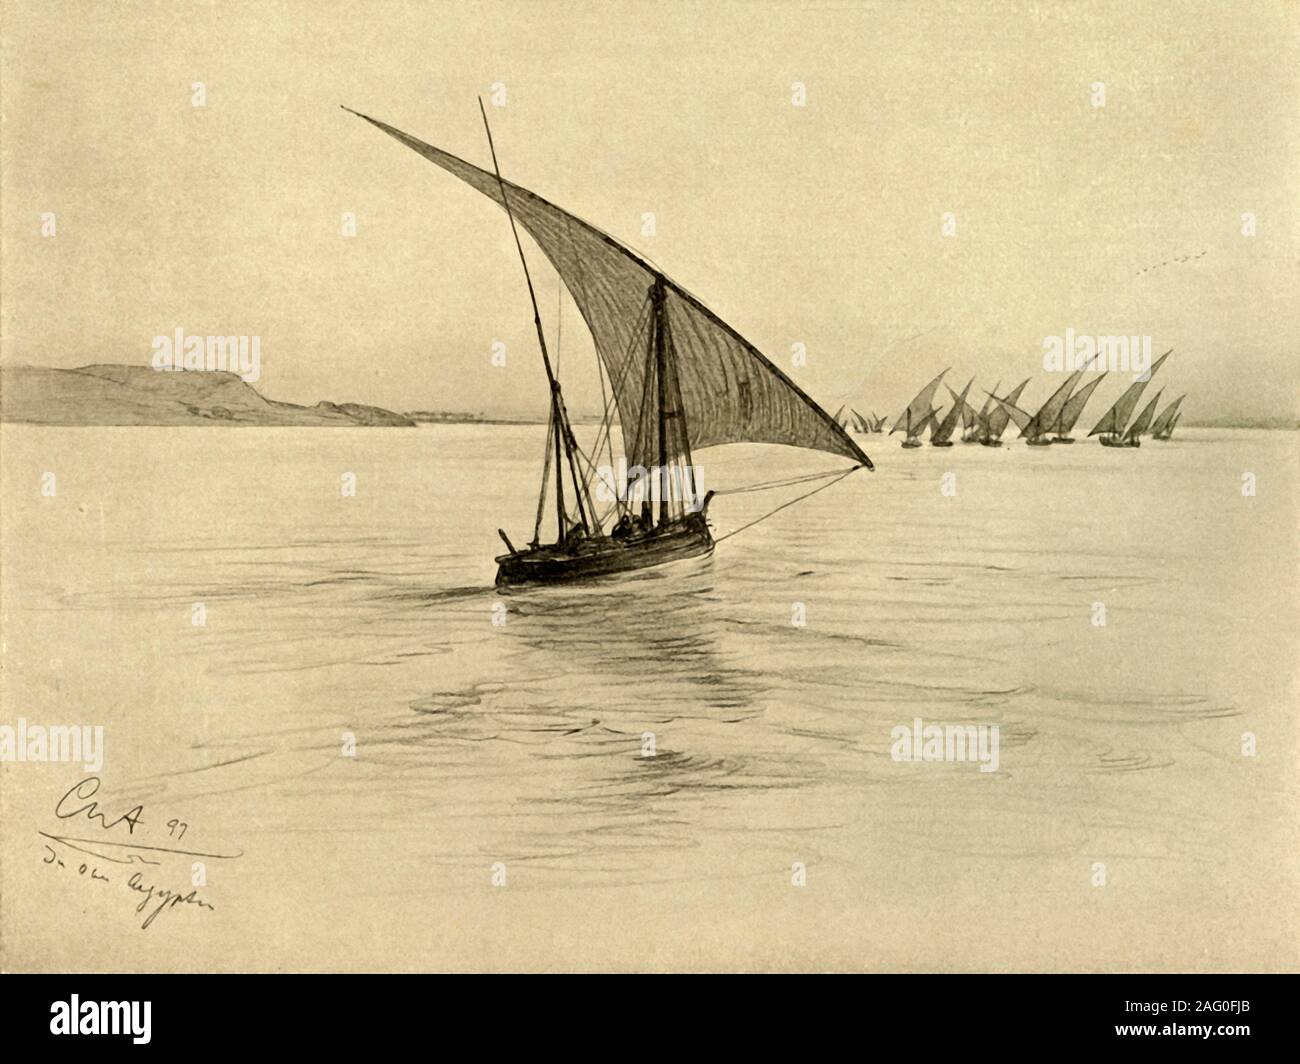 Felouques sur le Nil, Le Caire, Egypte, 1898. À partir de "Rund um die Erde", par C. W. Allers. [Union Deutsche Verlagsgesellschaft, Stuttgart, 1898] Banque D'Images